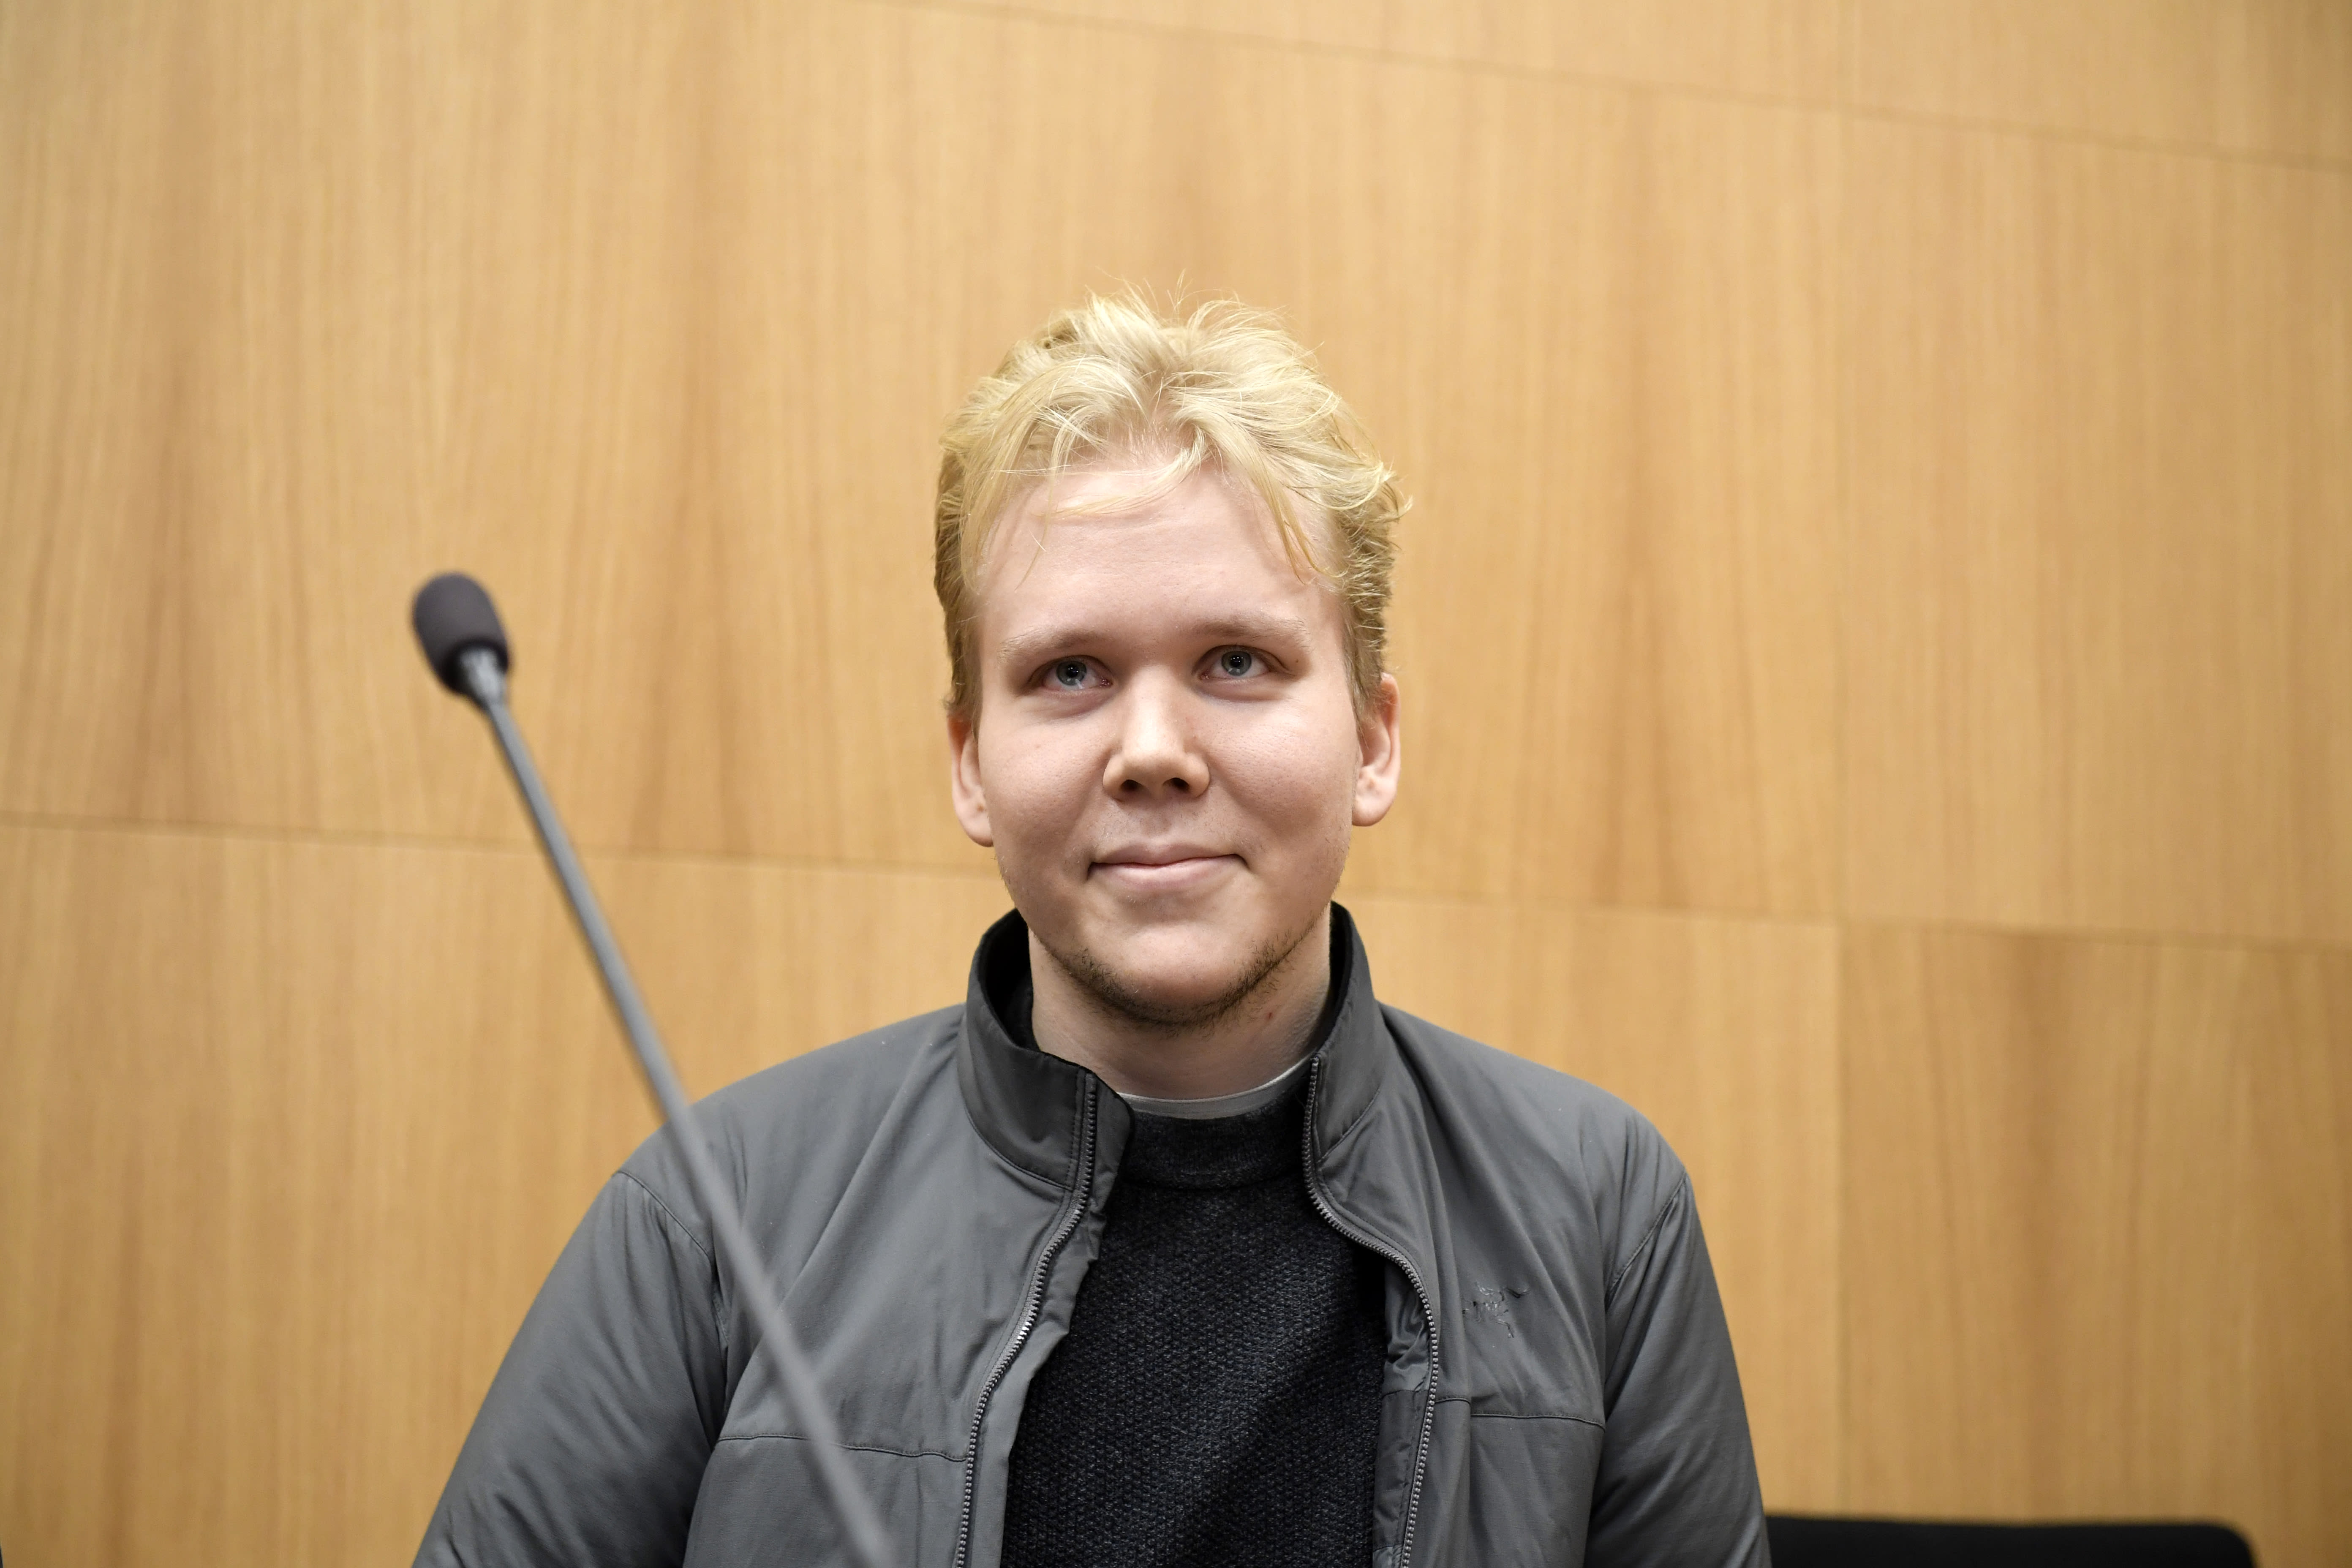 Aleksanteri Kivimäki wurde inhaftiert, weil er Vastaamo gehackt hatte